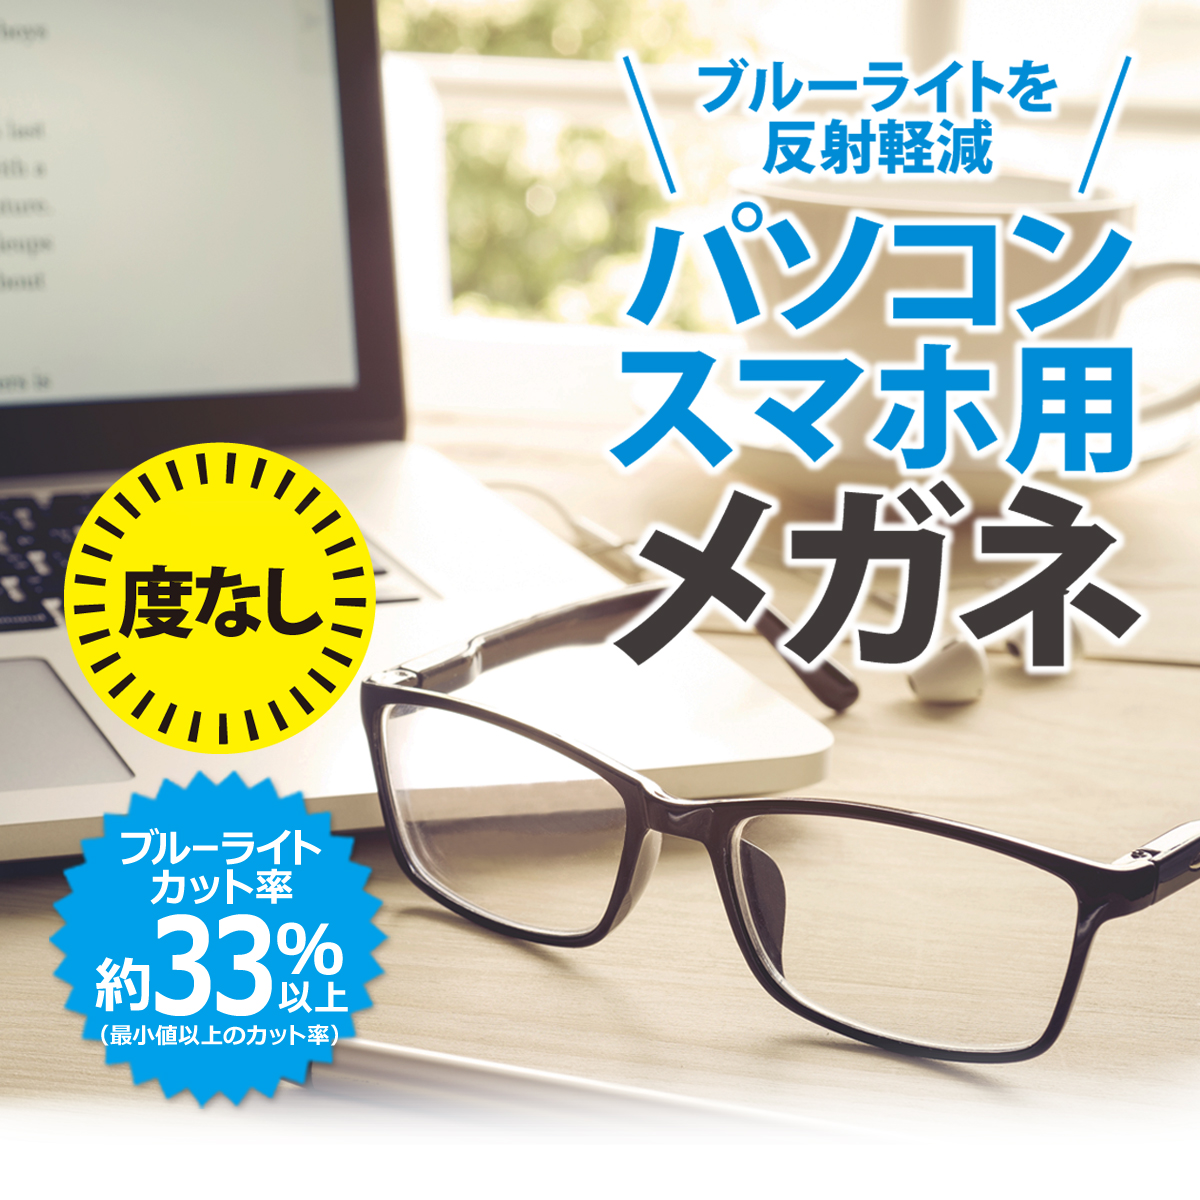 パソコン・スマホ用 メガネ 度なし DY1859-1 ウェリントン 軽量 プラスチック メタル 眼鏡 男女兼用 布ケース付き ブルーライトカット率約33%